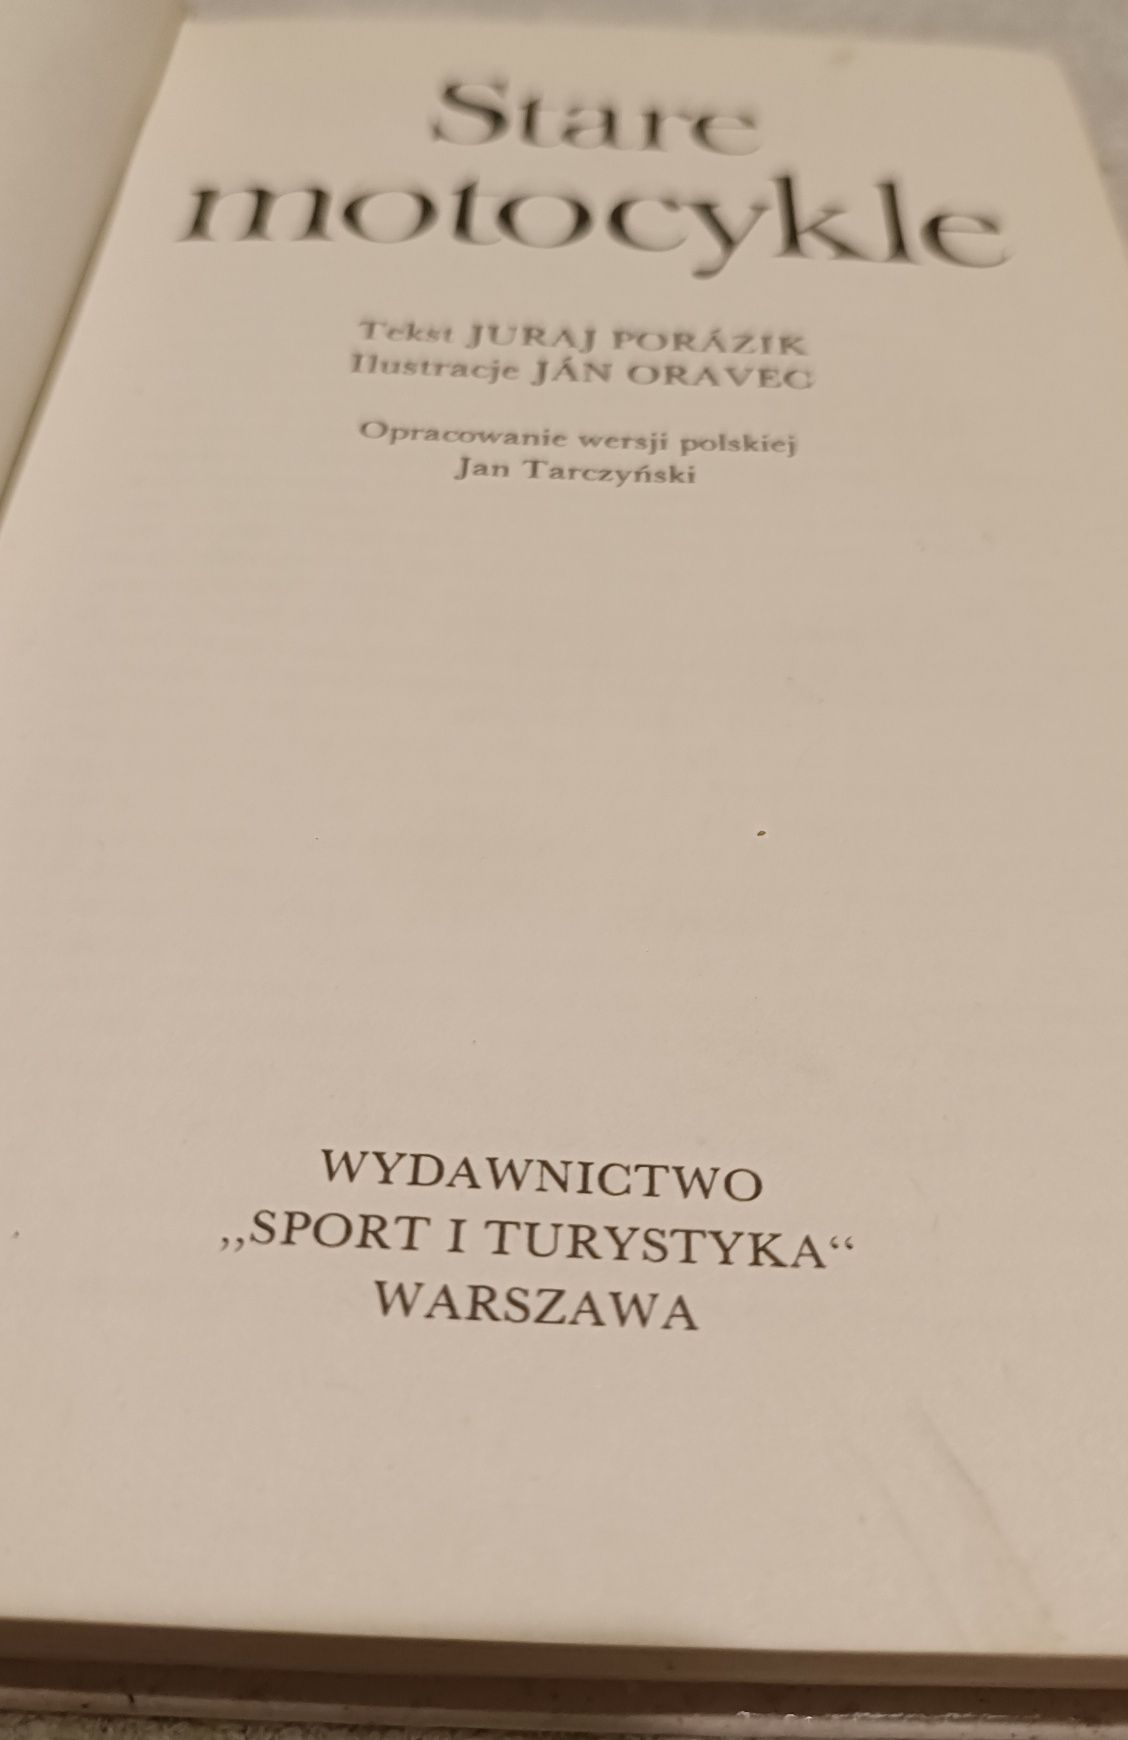 Książka "Stare Motocykle" Porazik Tarczyński 1984 rok twarda oprawa